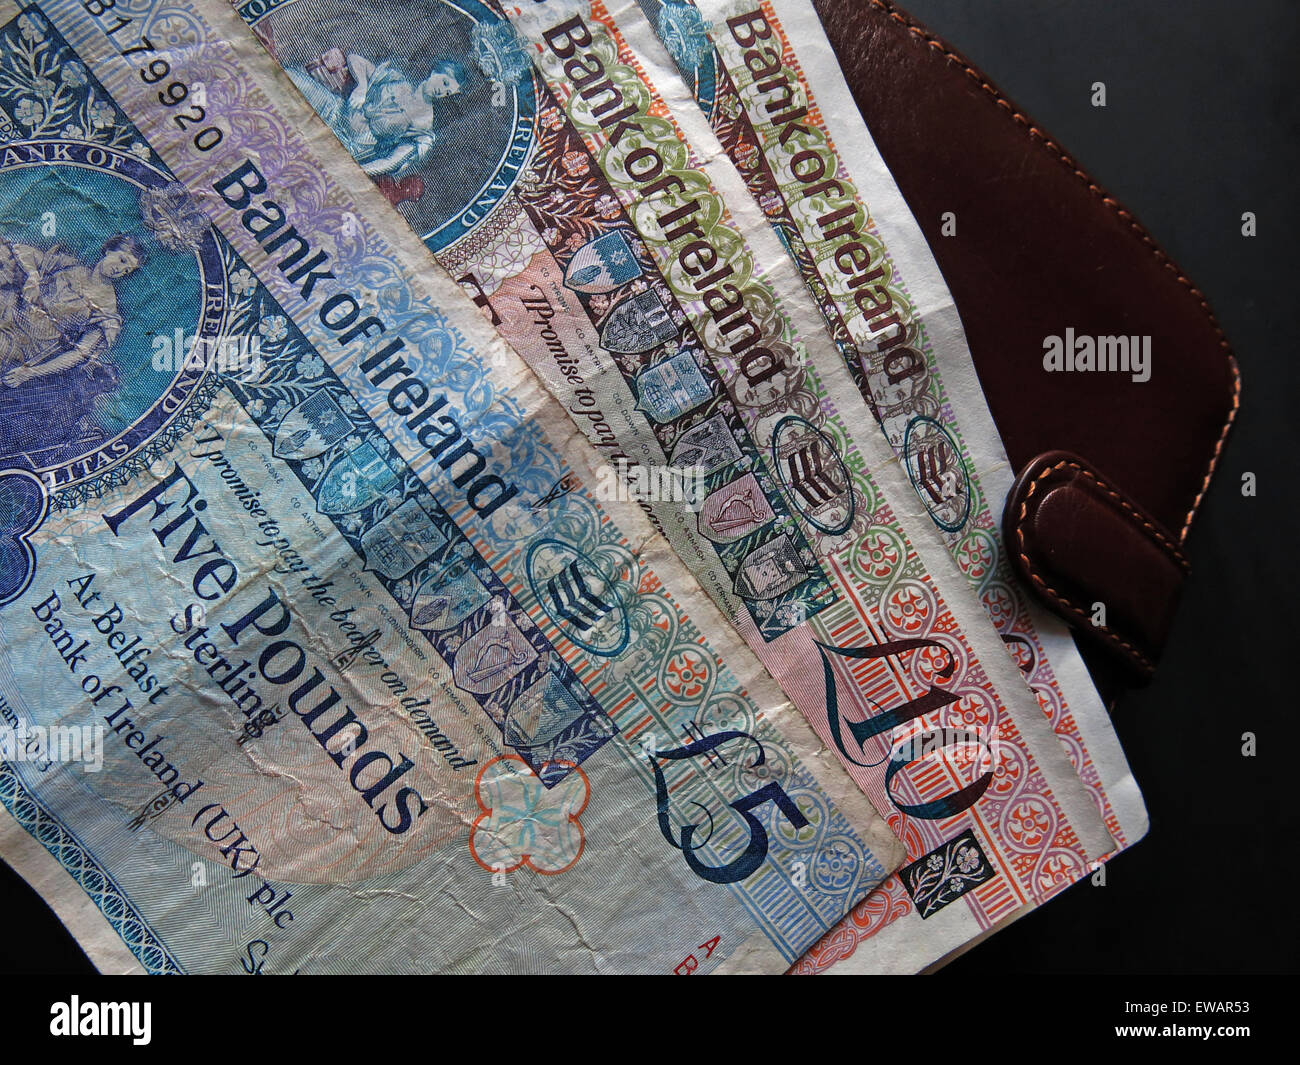 In Irlanda del Nord a 5 sterline, £10 note e cancelletto monete a corso legale della Banca di Irlanda Belfast, accanto un portafogli Foto Stock